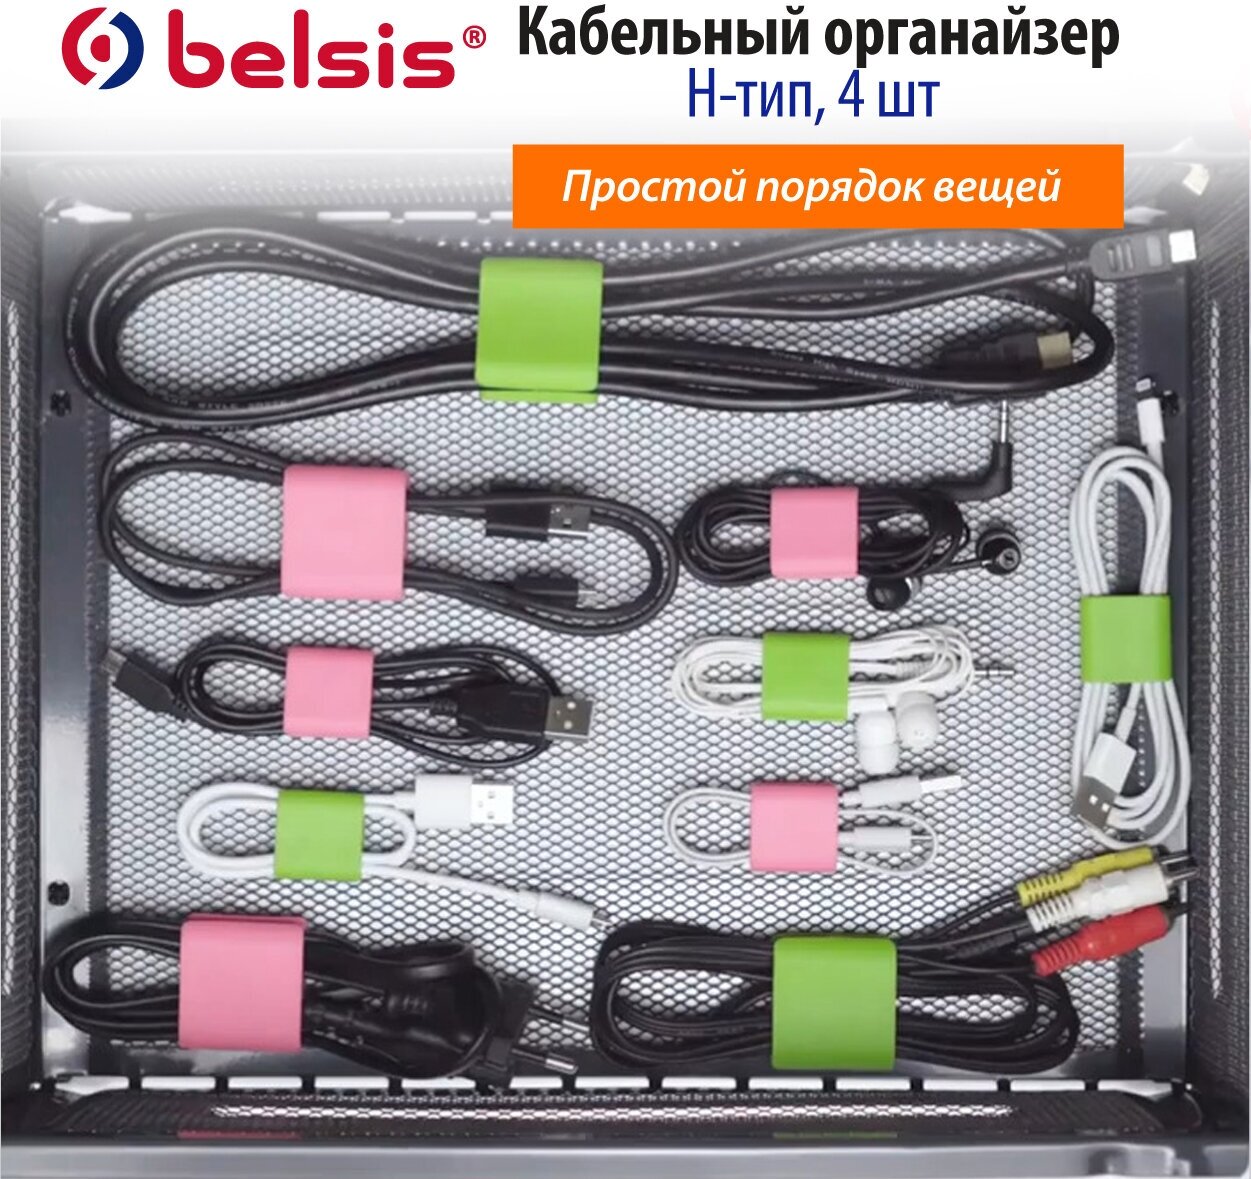 Держатель для кабеля/Органайзер для кабелей/ Стяжка для кабелей/Зажим для кабелей/Размер L/4 уки комплект/Belsis/цвет зелёный розовый/ CM1301MX